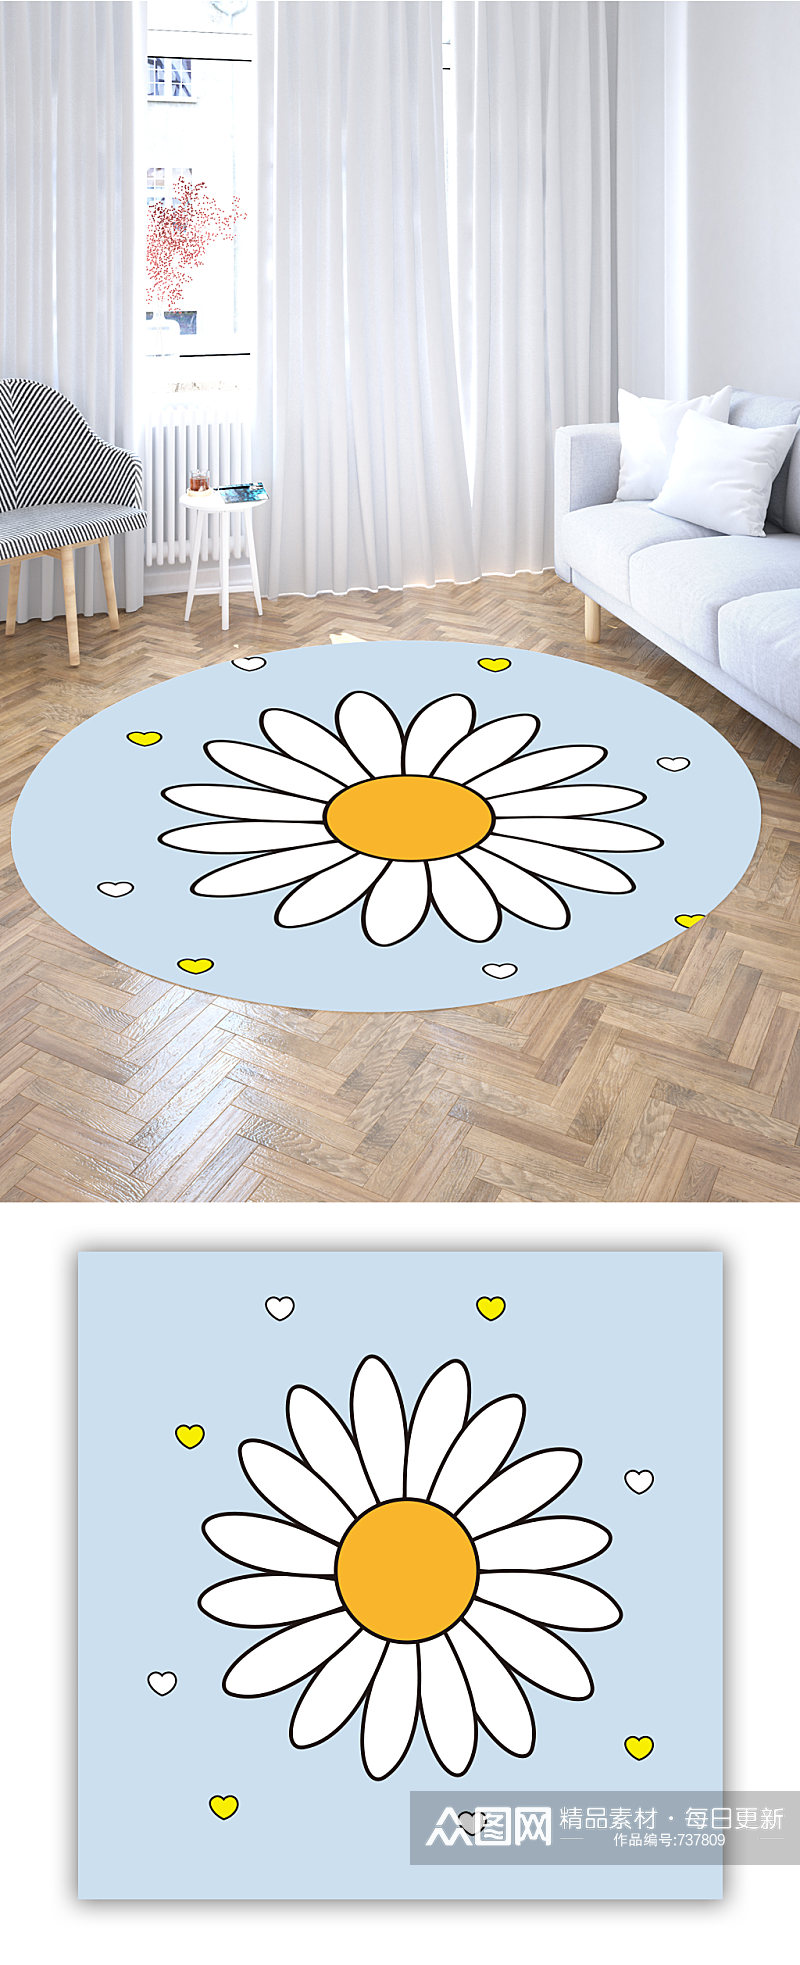 圆形地毯花卉图案素材